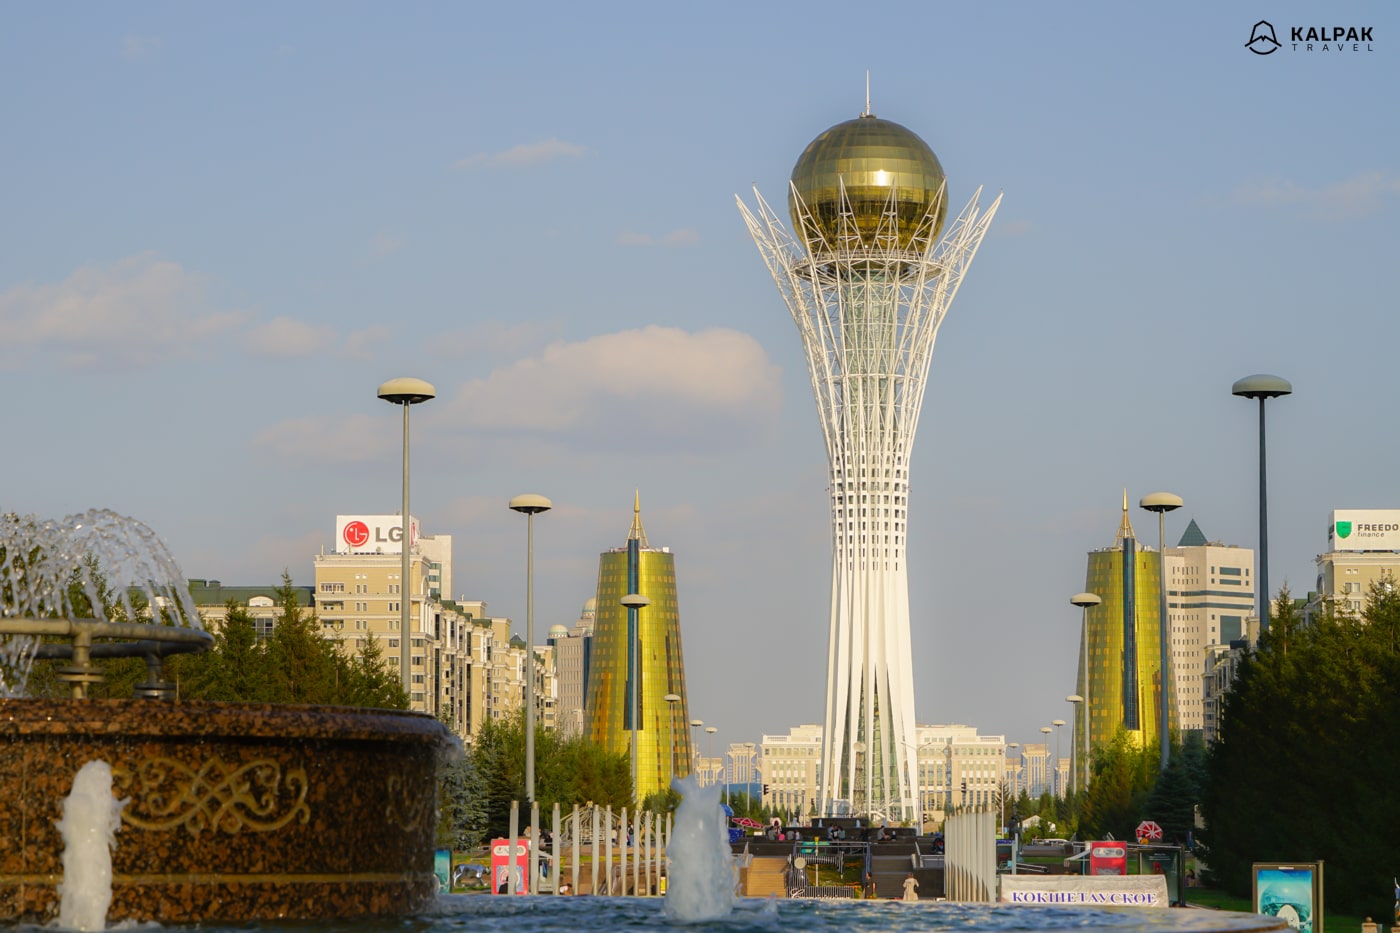 Baiterek tower in Astana, Kazakhstan